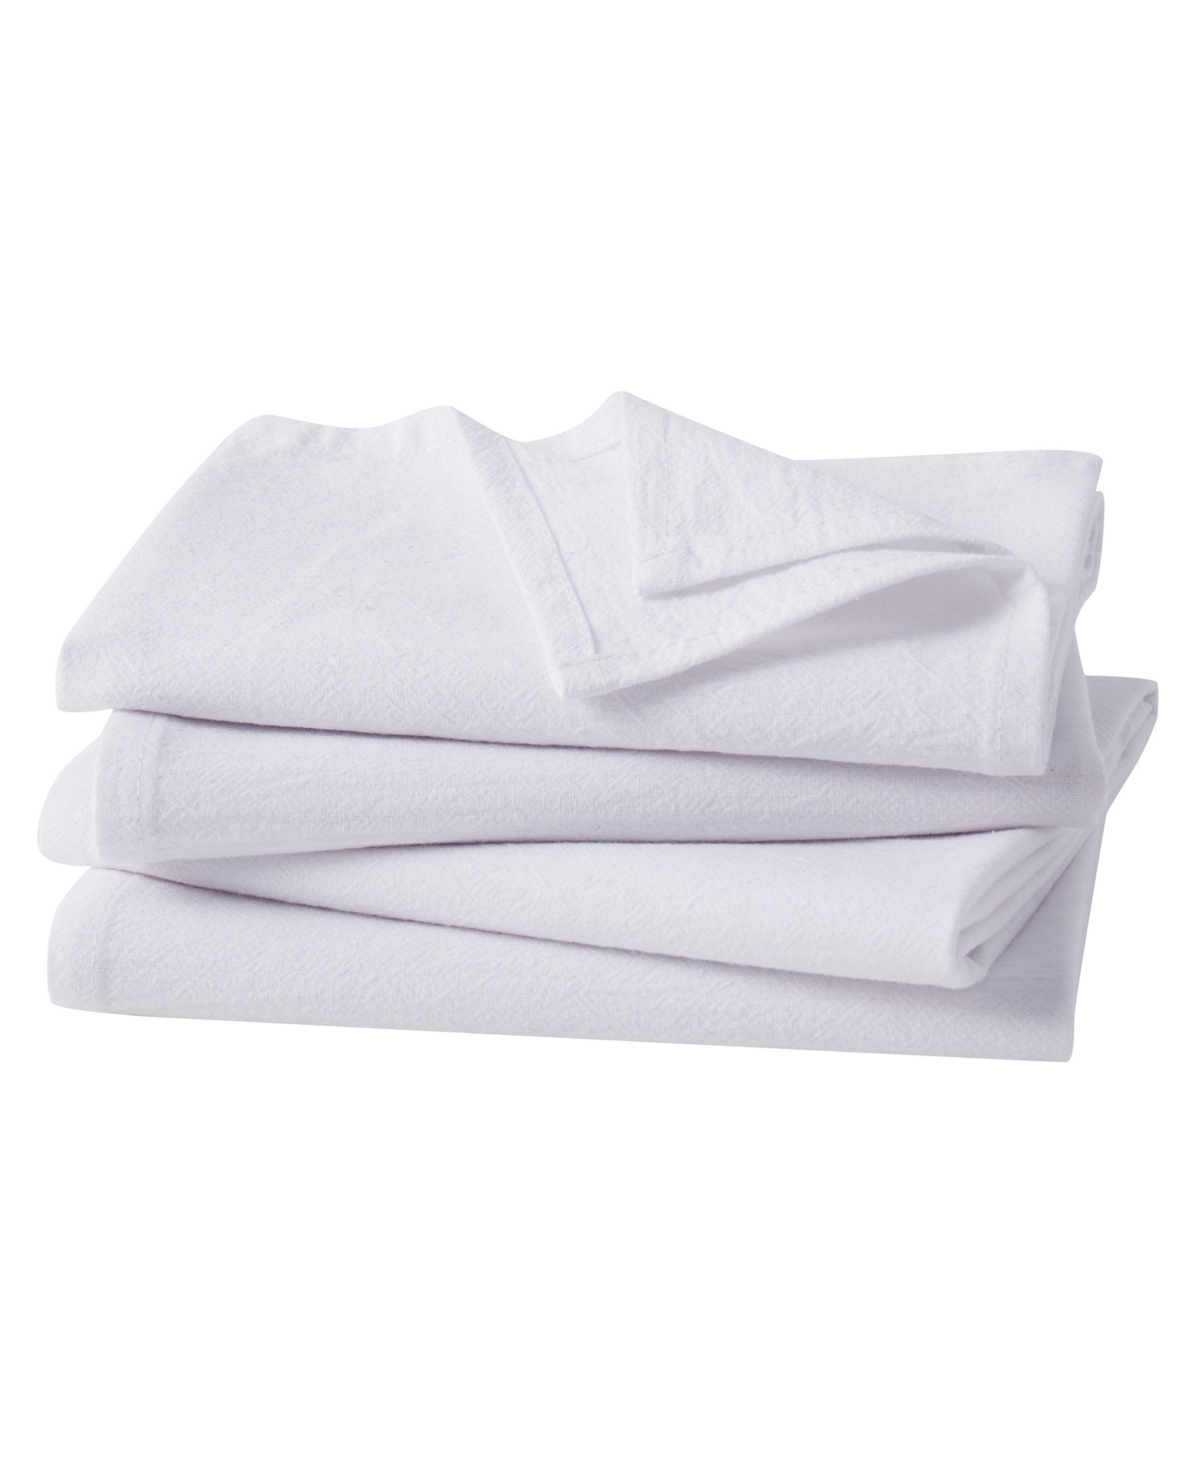 White Flour Sack Kitchen Towel, Set of 4 - White